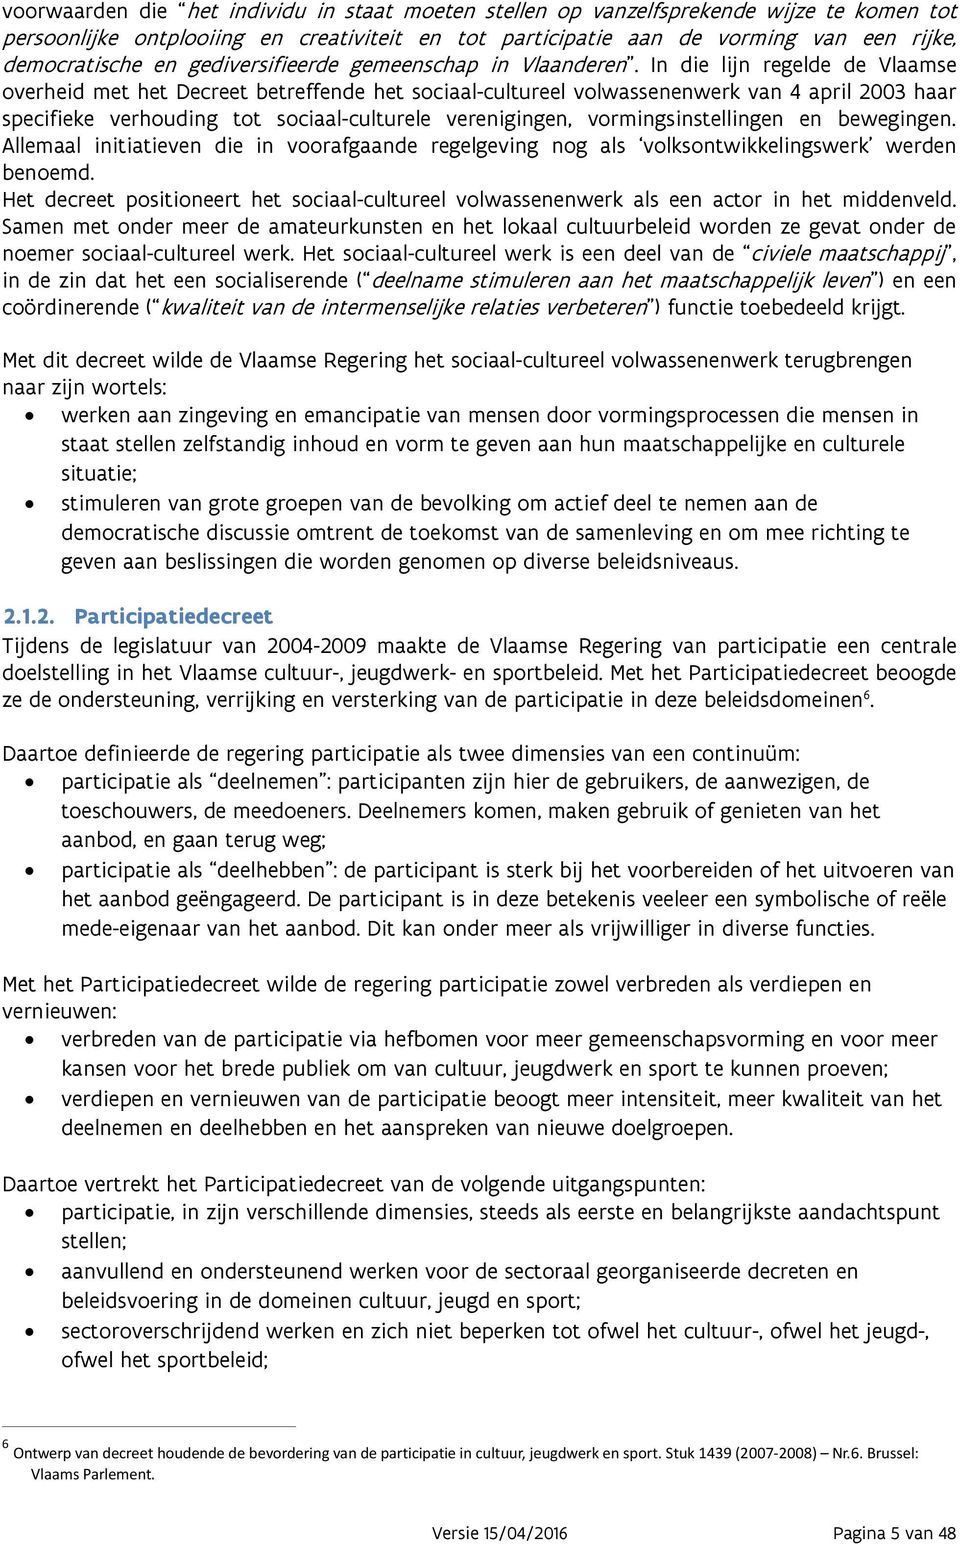 In die lijn regelde de Vlaamse overheid met het Decreet betreffende het sociaal-cultureel volwassenenwerk van 4 april 2003 haar specifieke verhouding tot sociaal-culturele verenigingen,